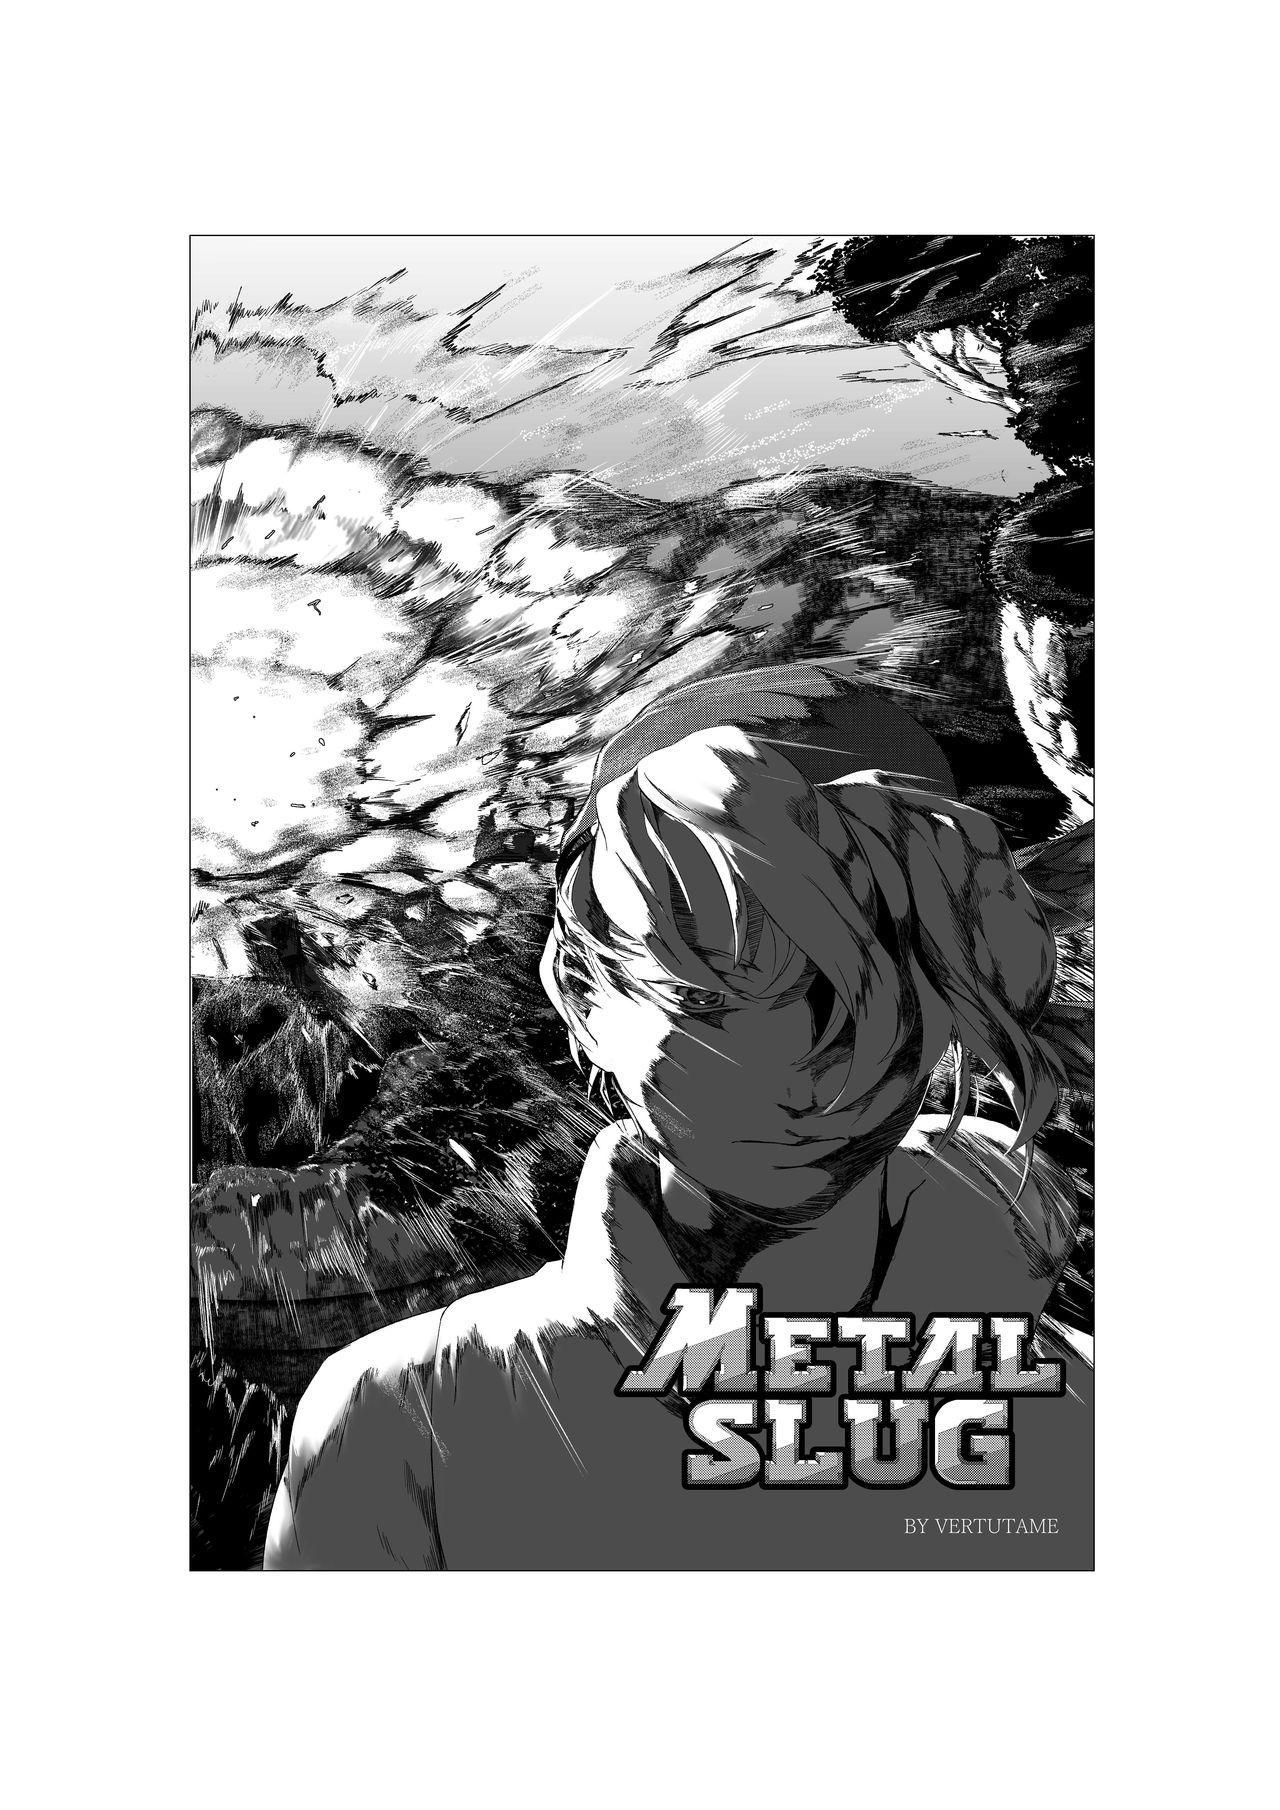 Metal slug 0